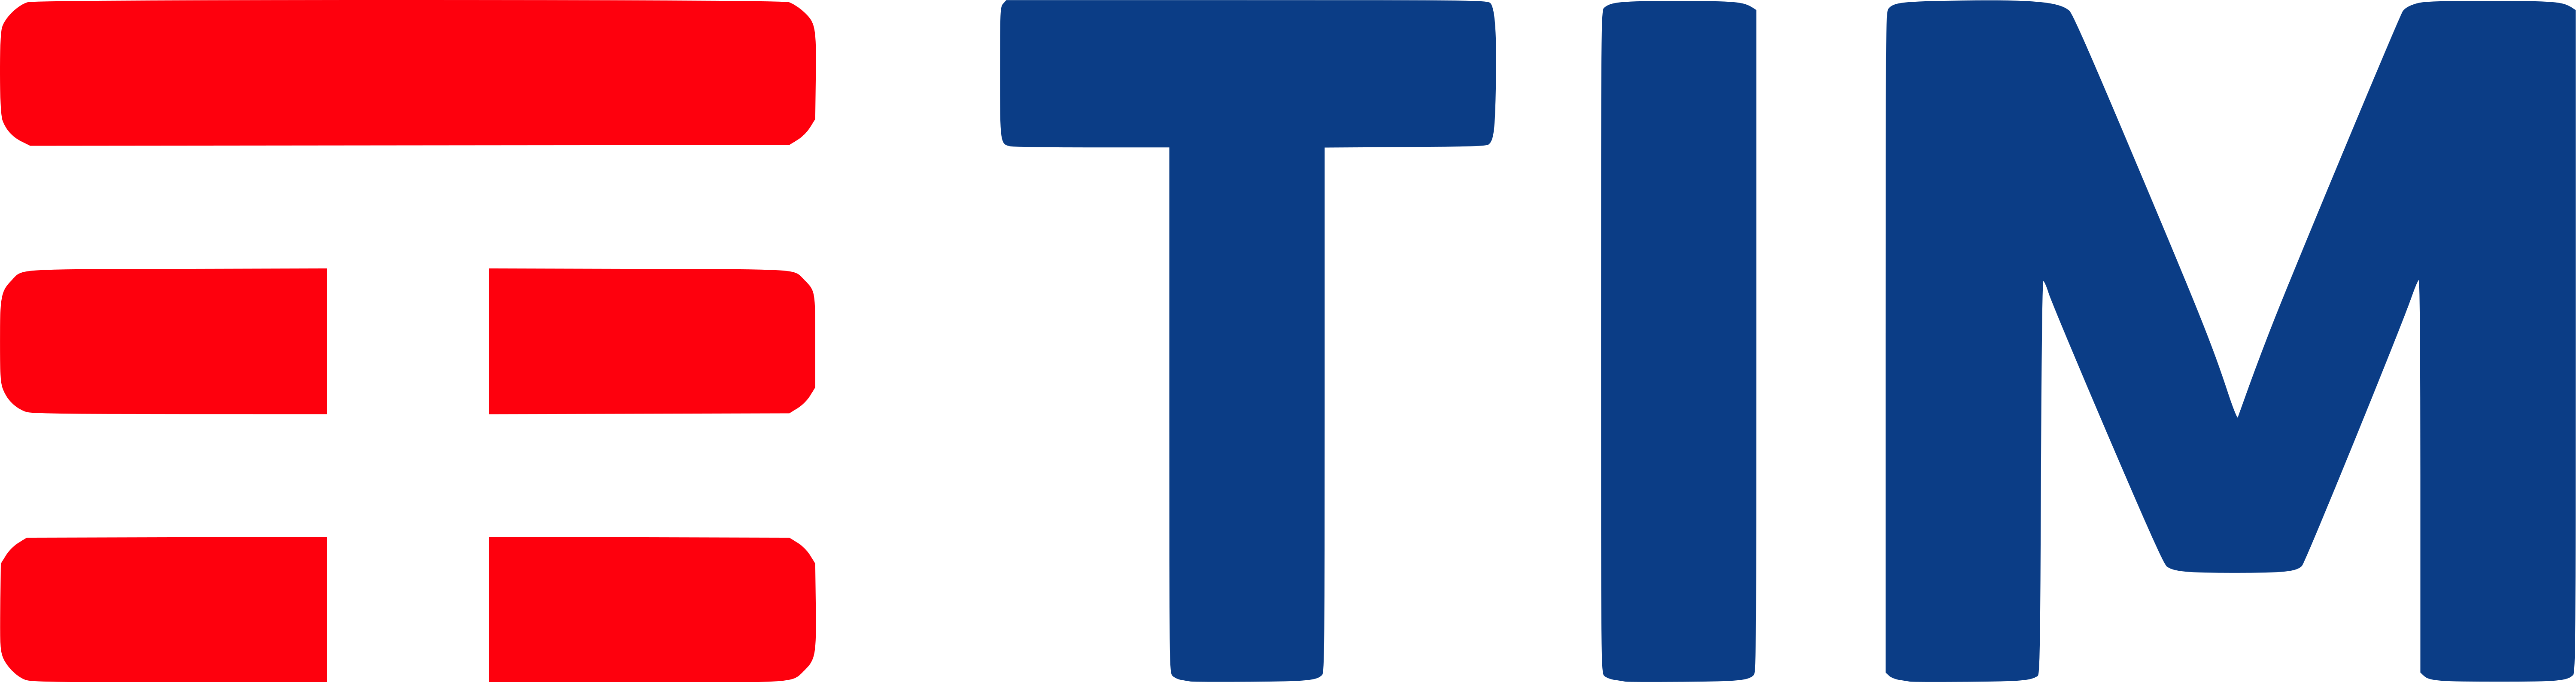 tim logo 2 1 - TIM Logo